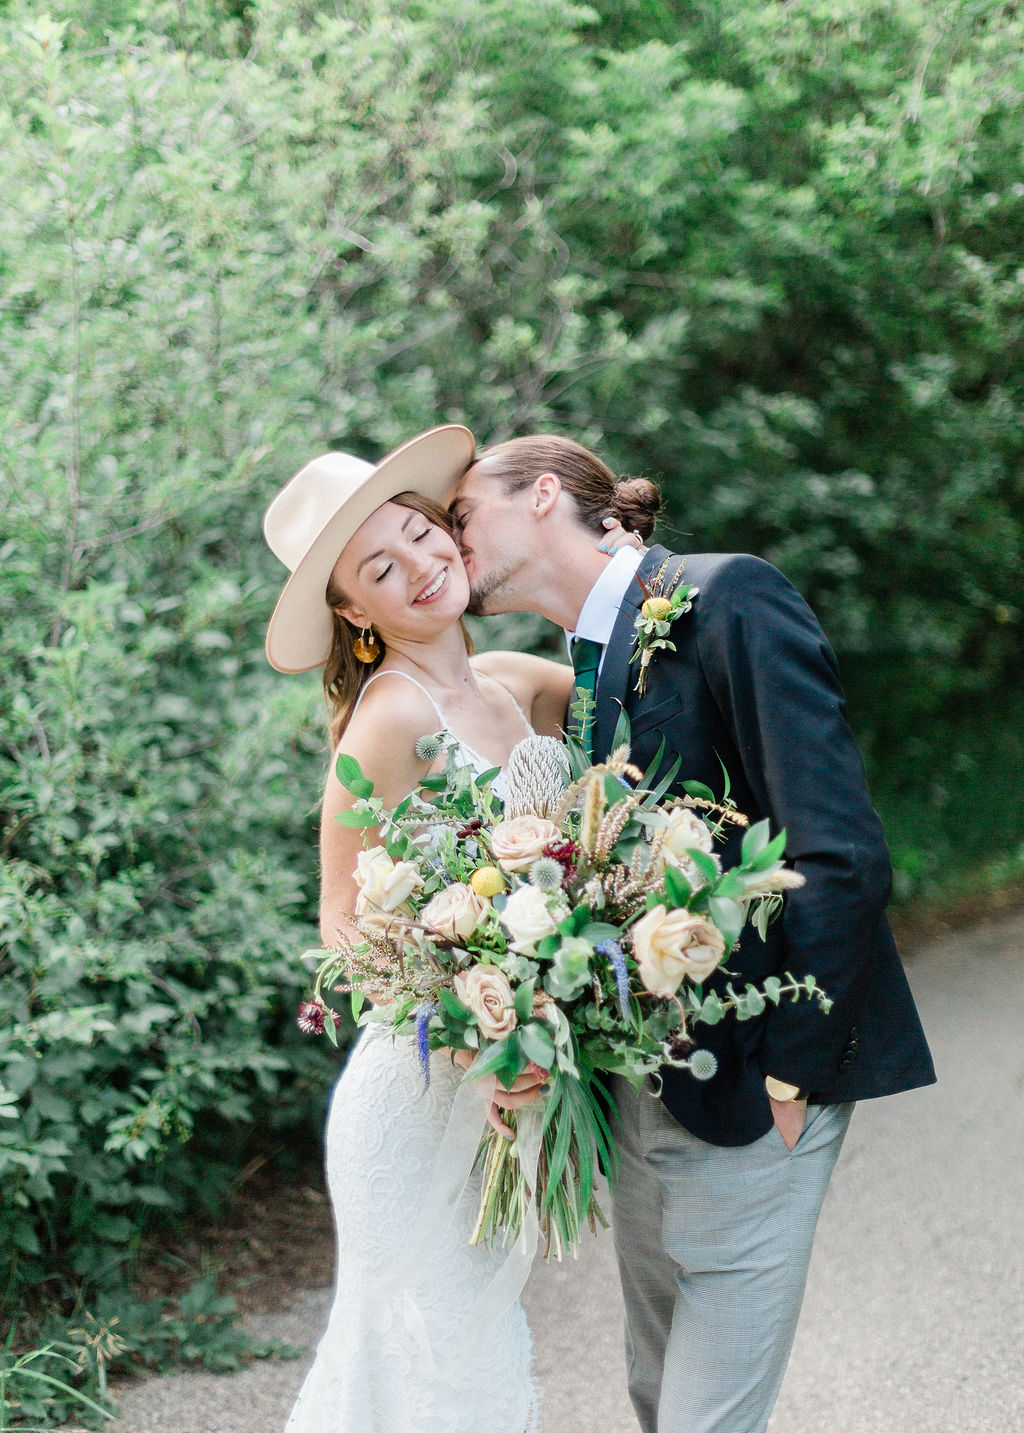 Intimate Wild Flower Wedding - wedding bouquet, bride and groom